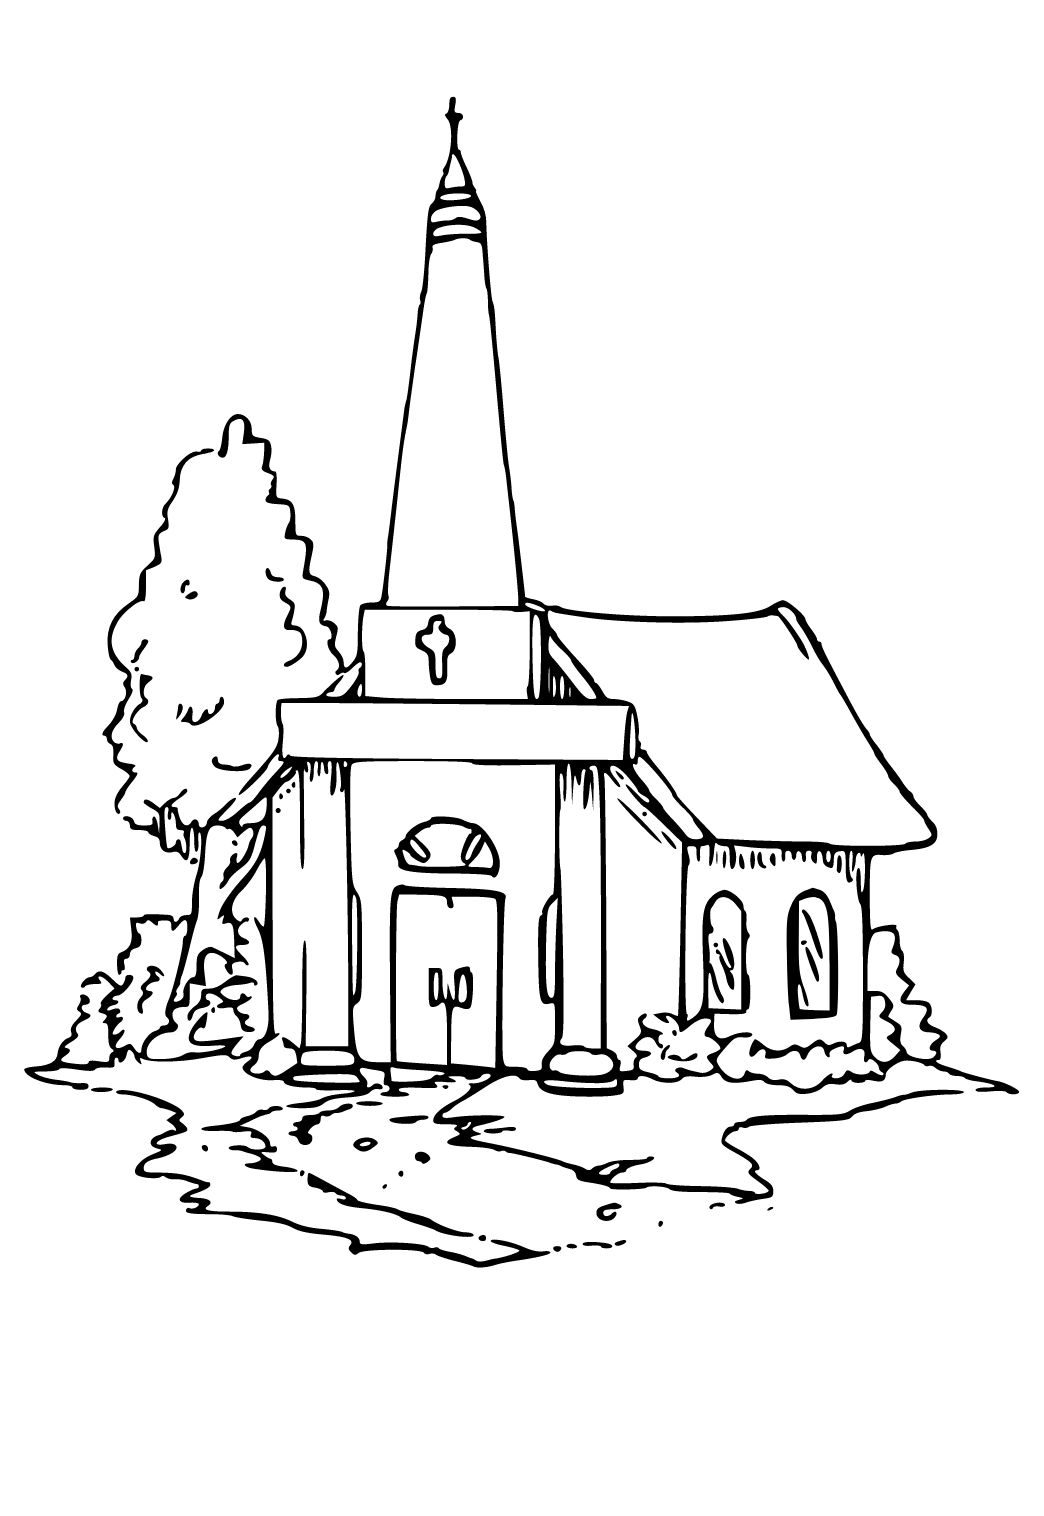 Bažnyčia